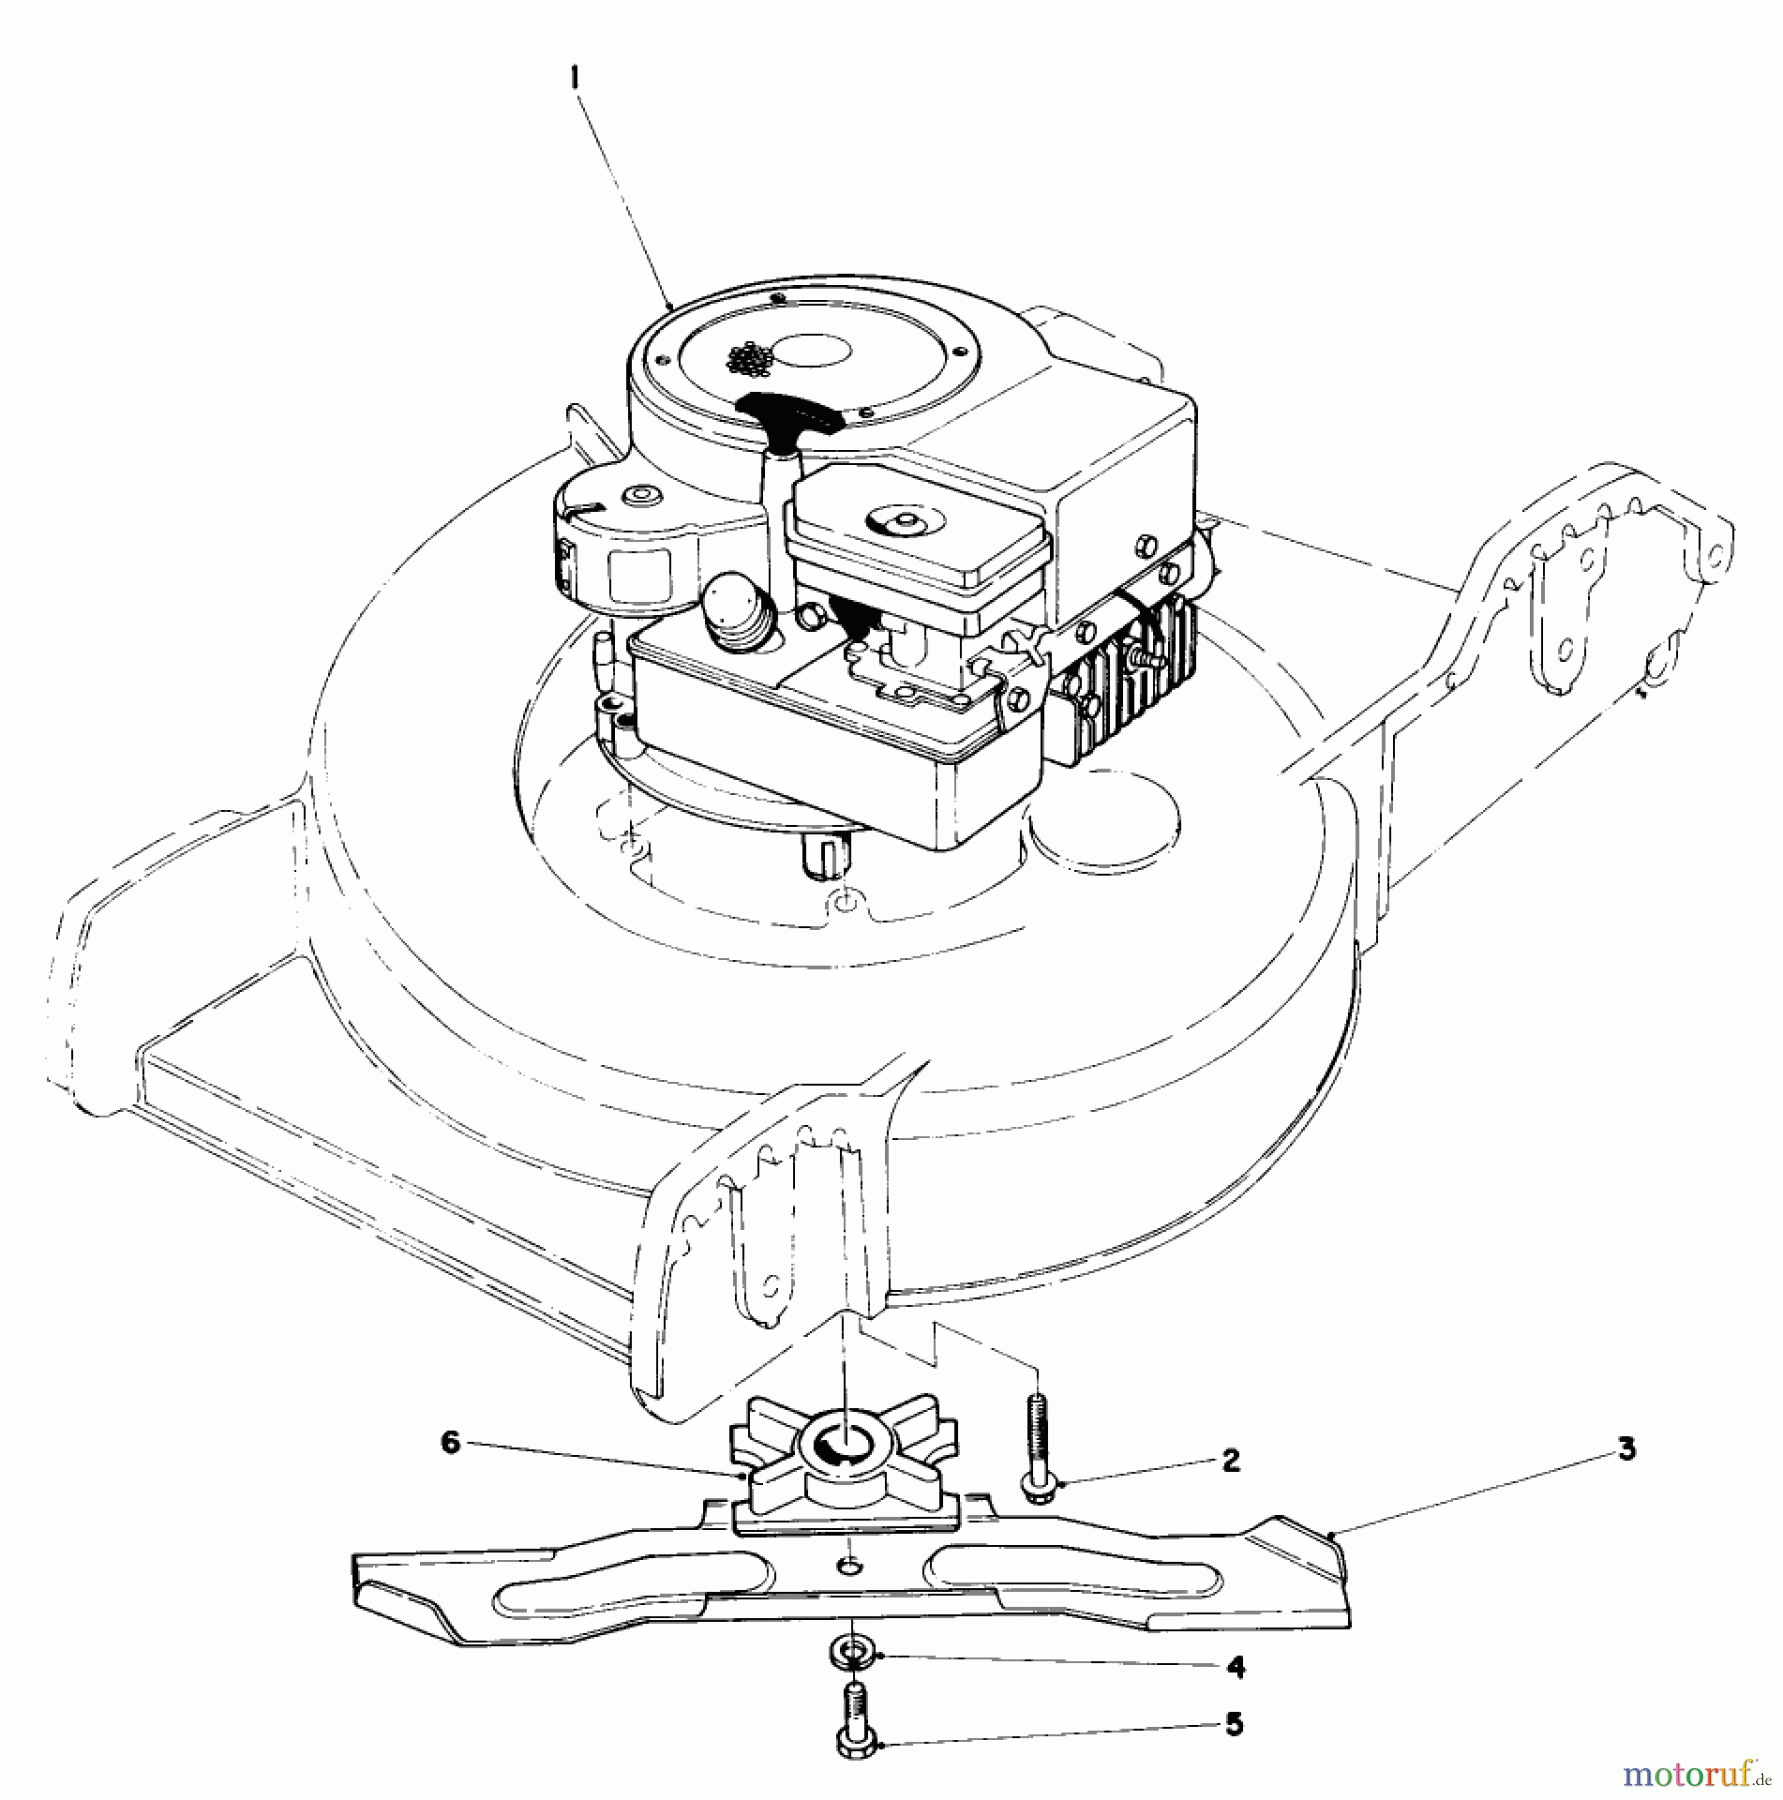  Toro Neu Mowers, Walk-Behind Seite 1 20742 - Toro Lawnmower, 1984 (4000001-4999999) ENGINE ASSEMBLY